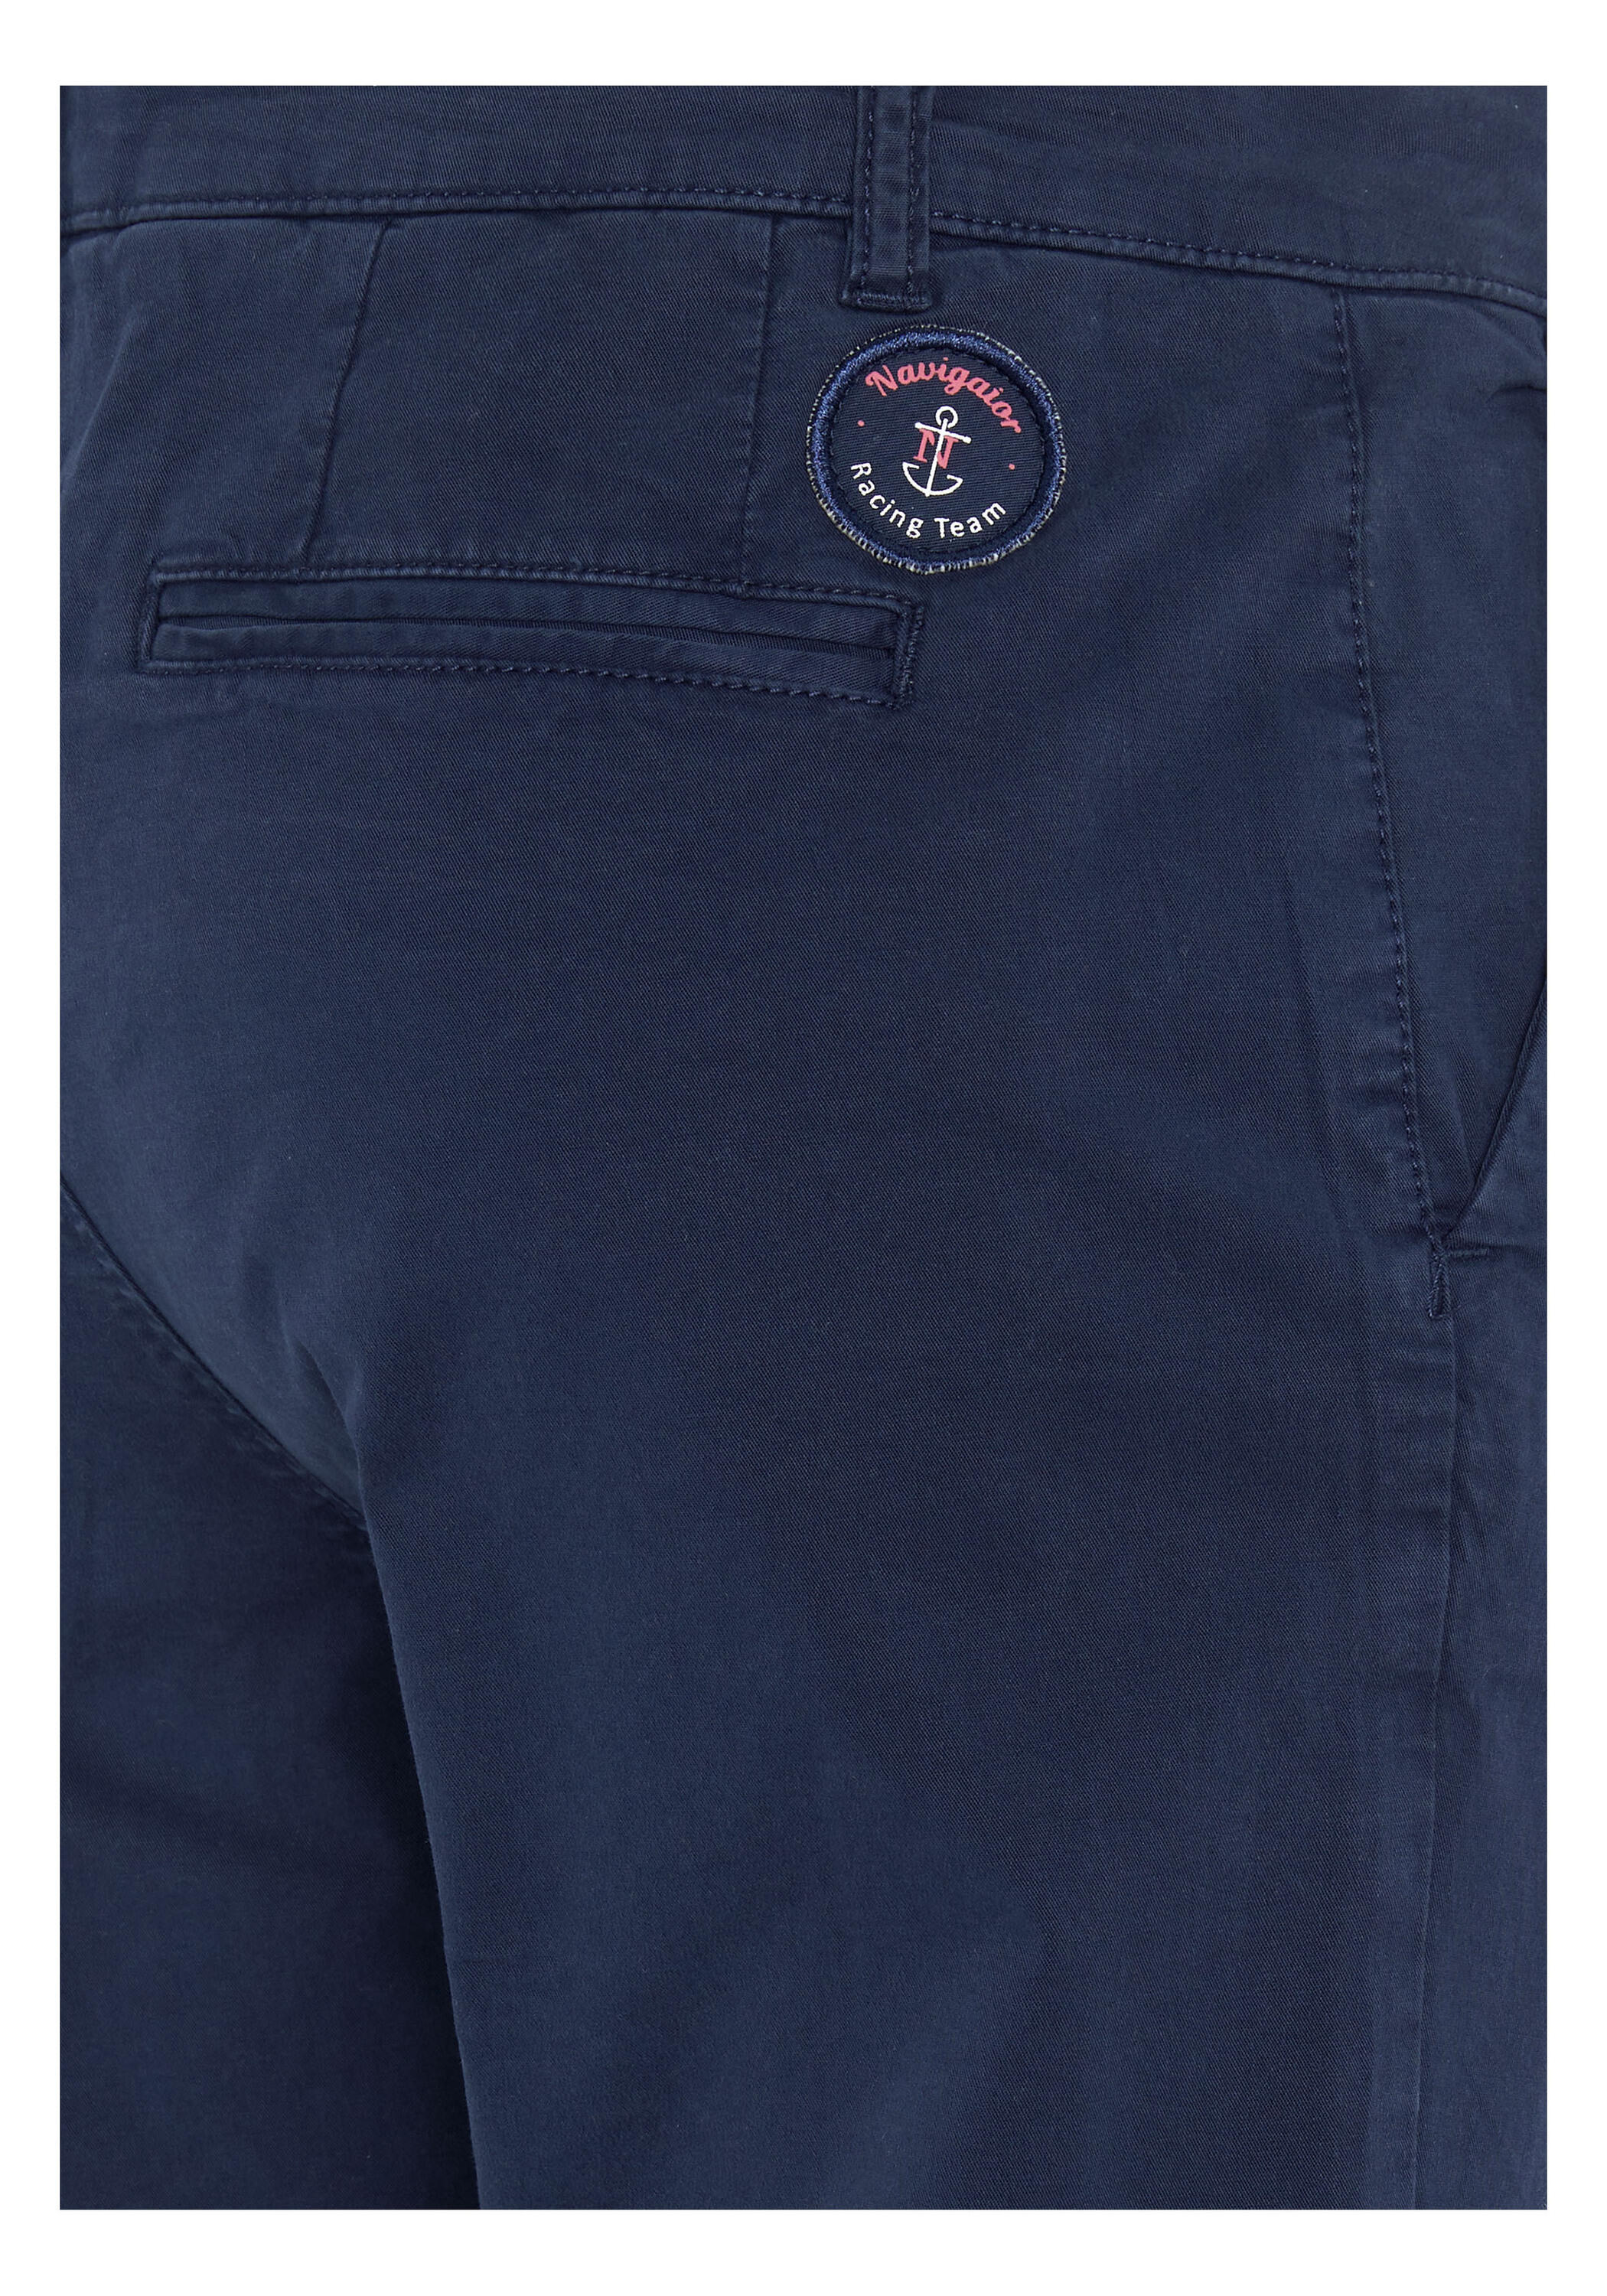 Hose mit kleinem Markenlogo-Badge